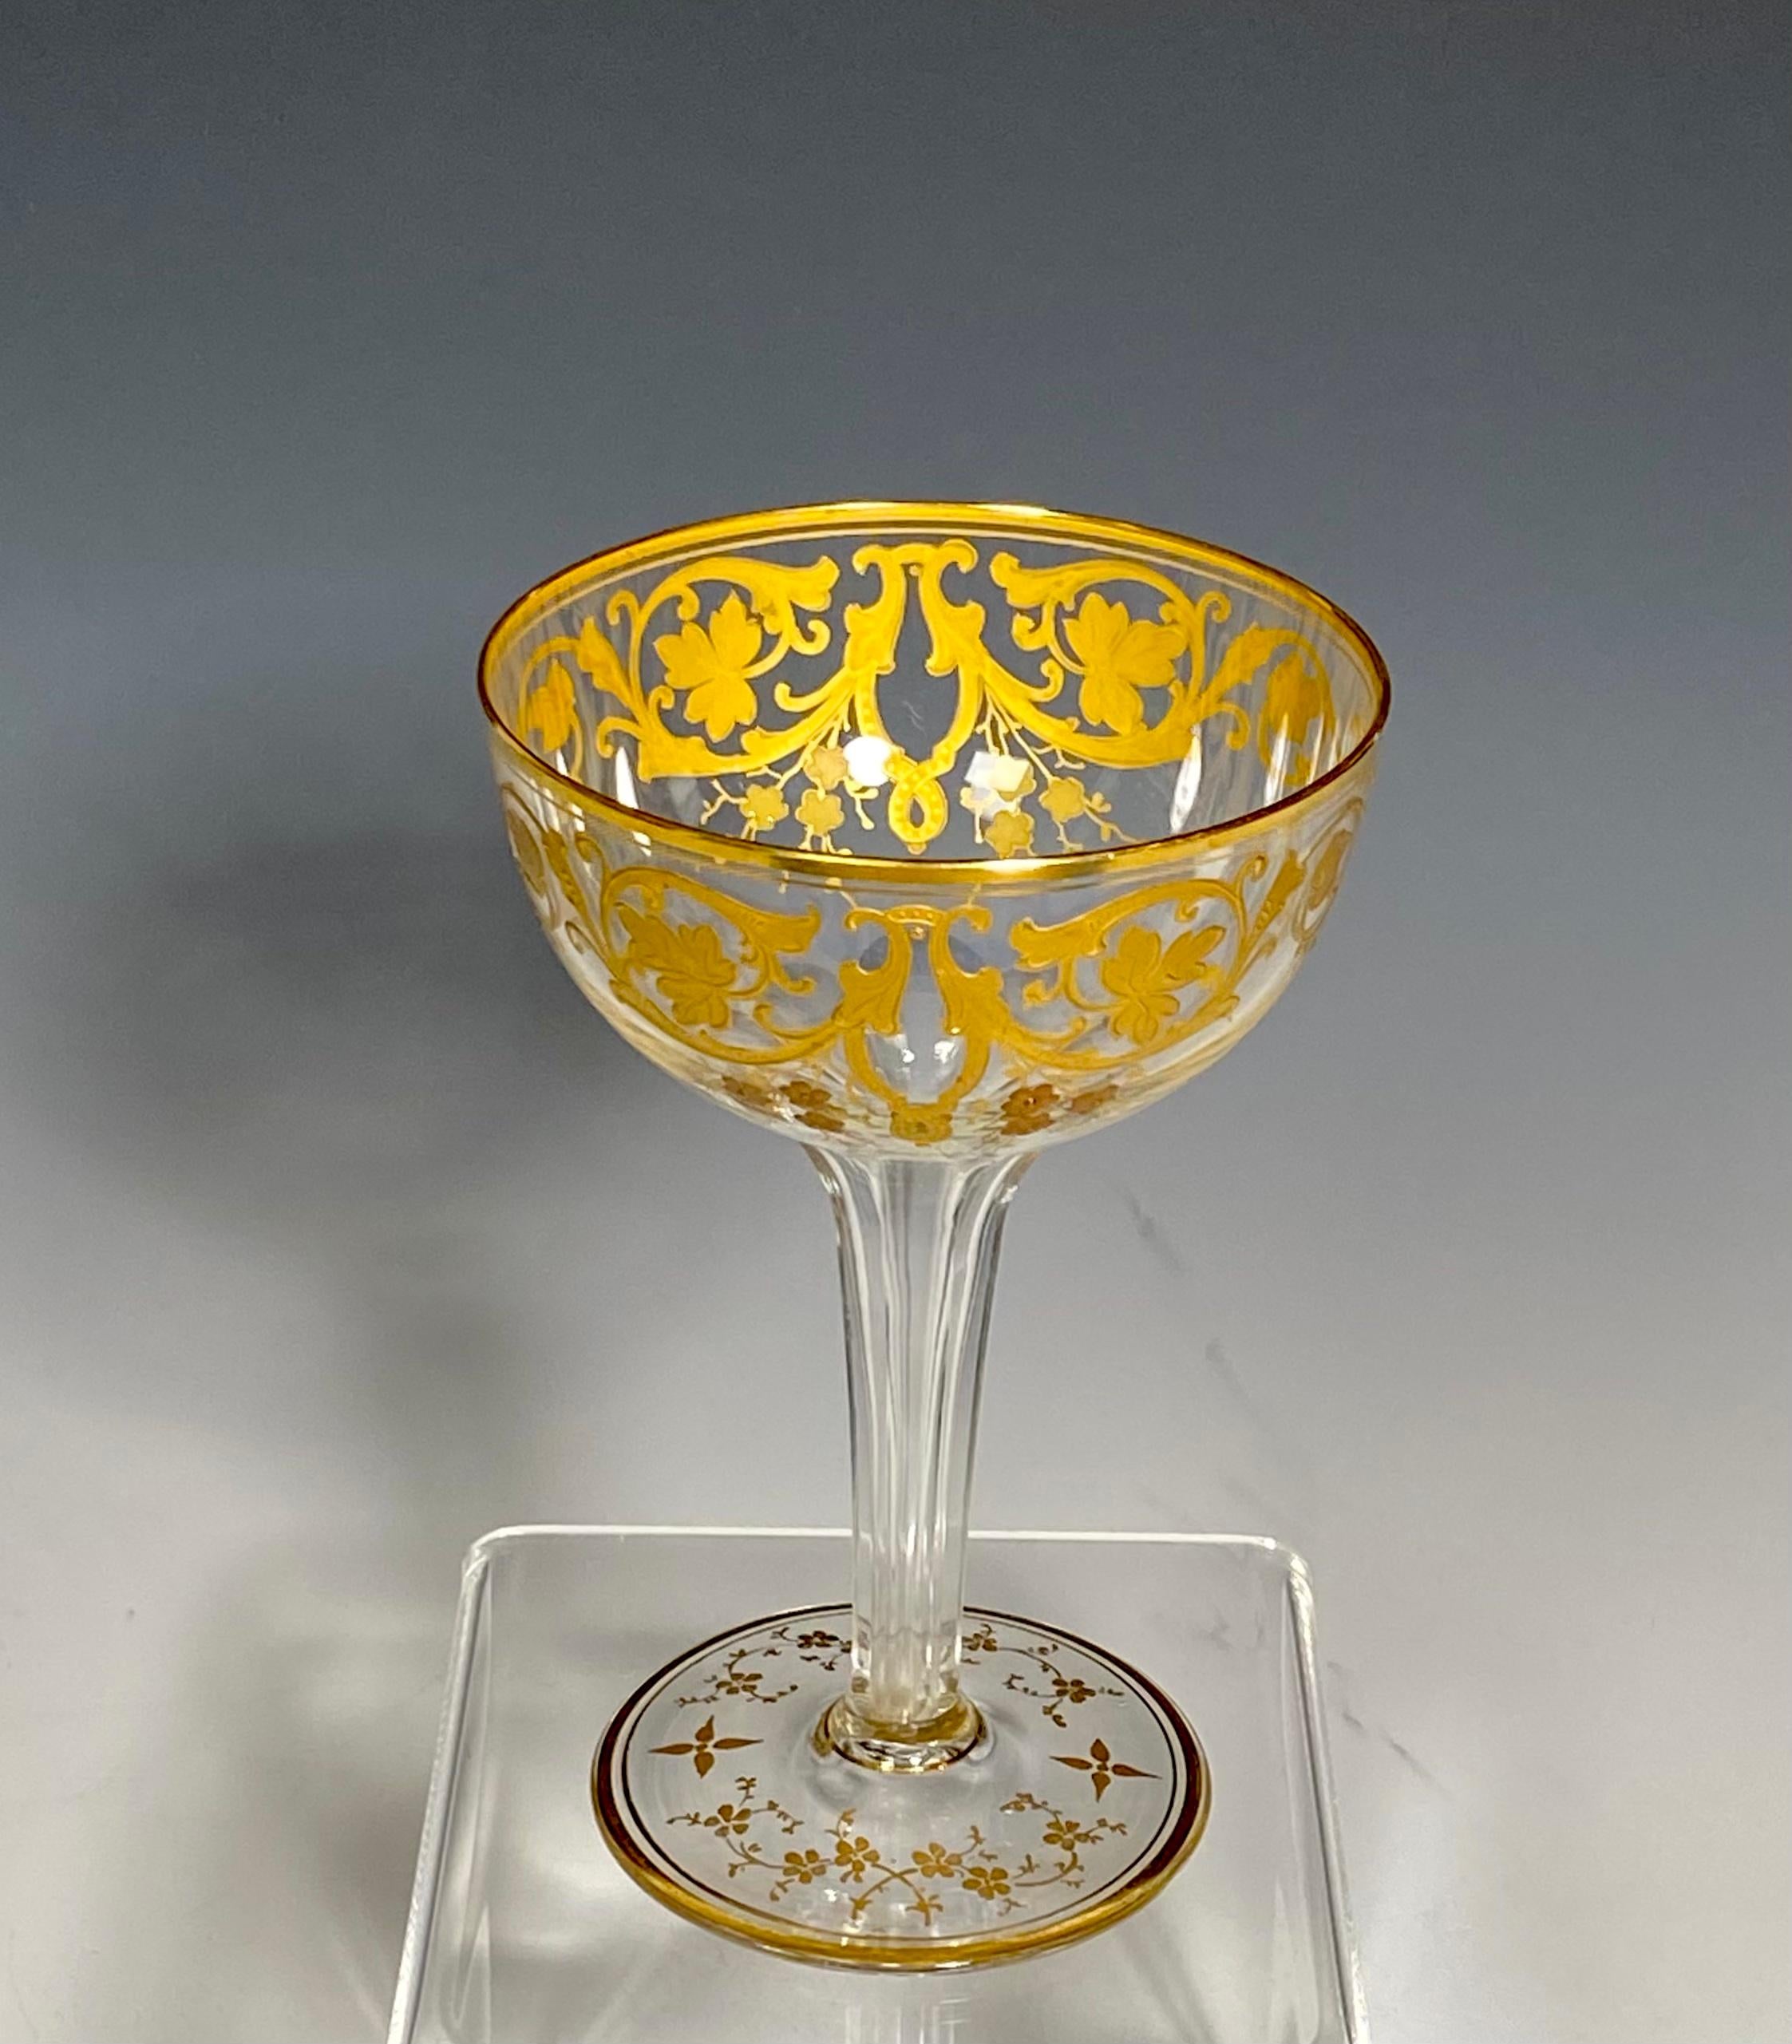 baccarat champagne glasses vintage